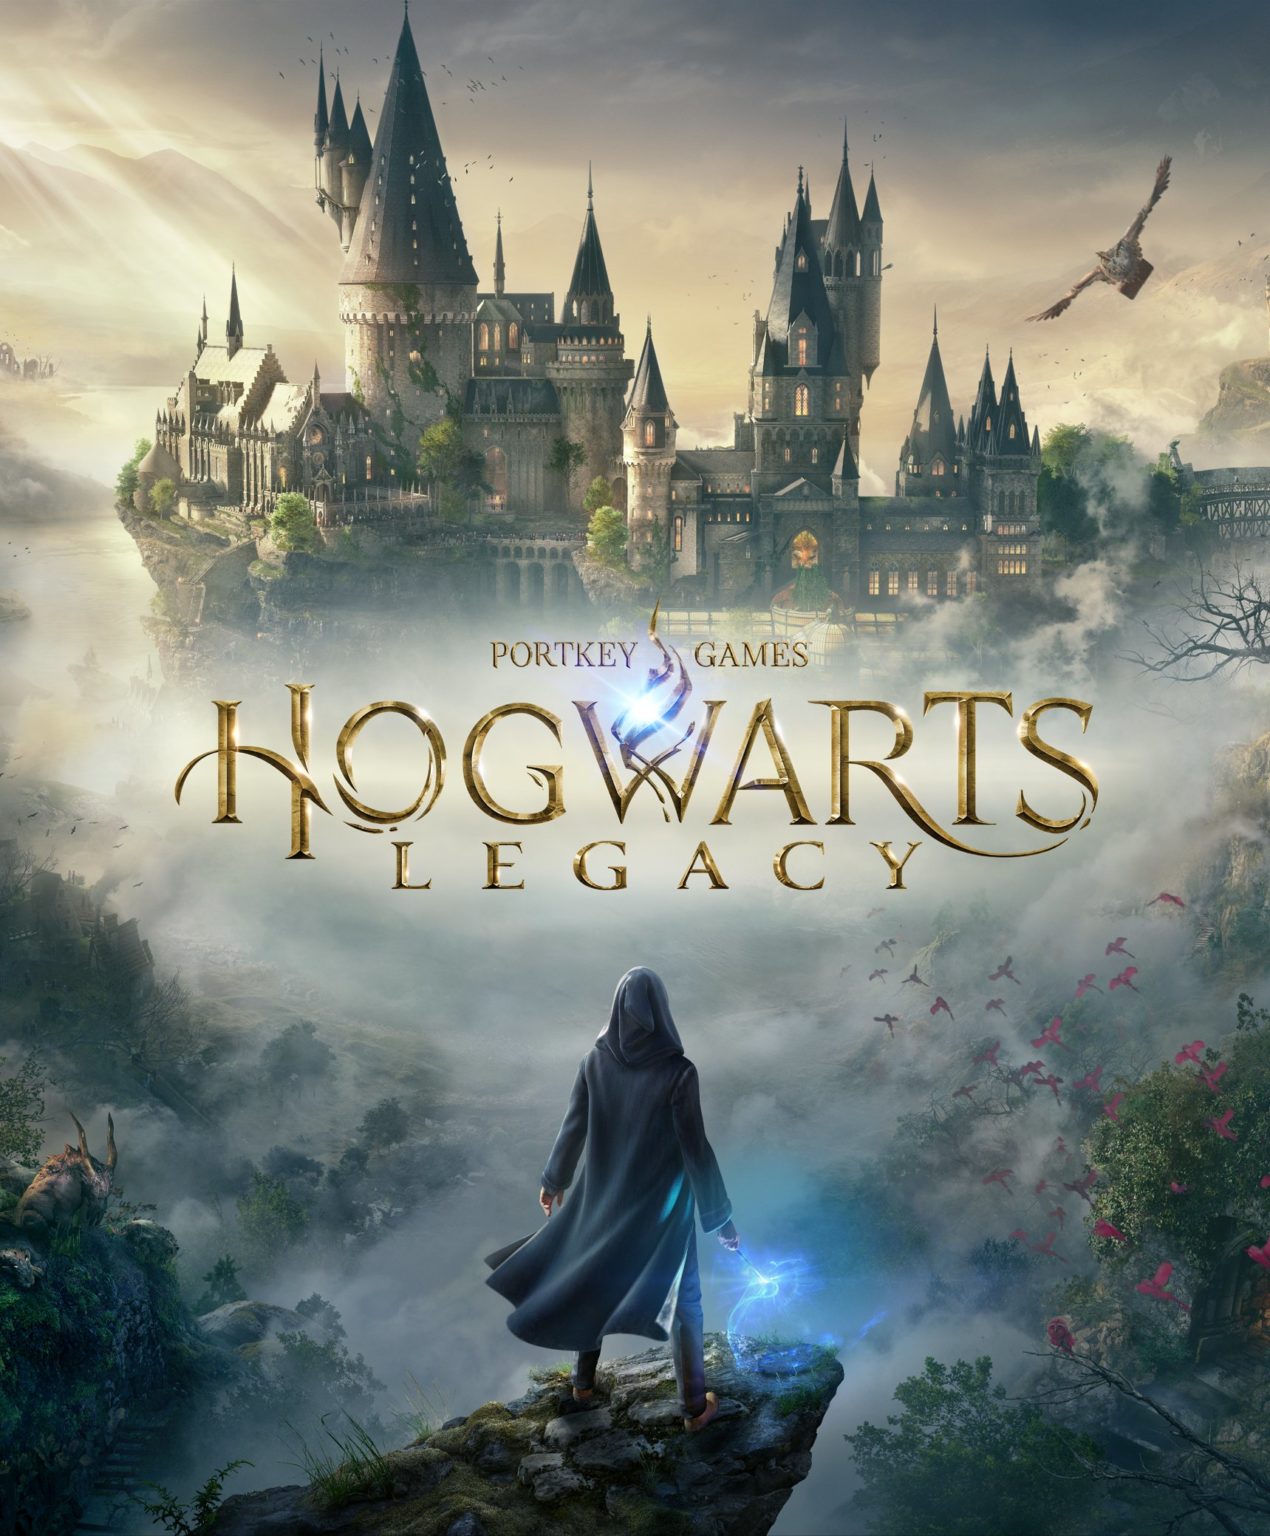 hogwarts legacy patch notes reddit